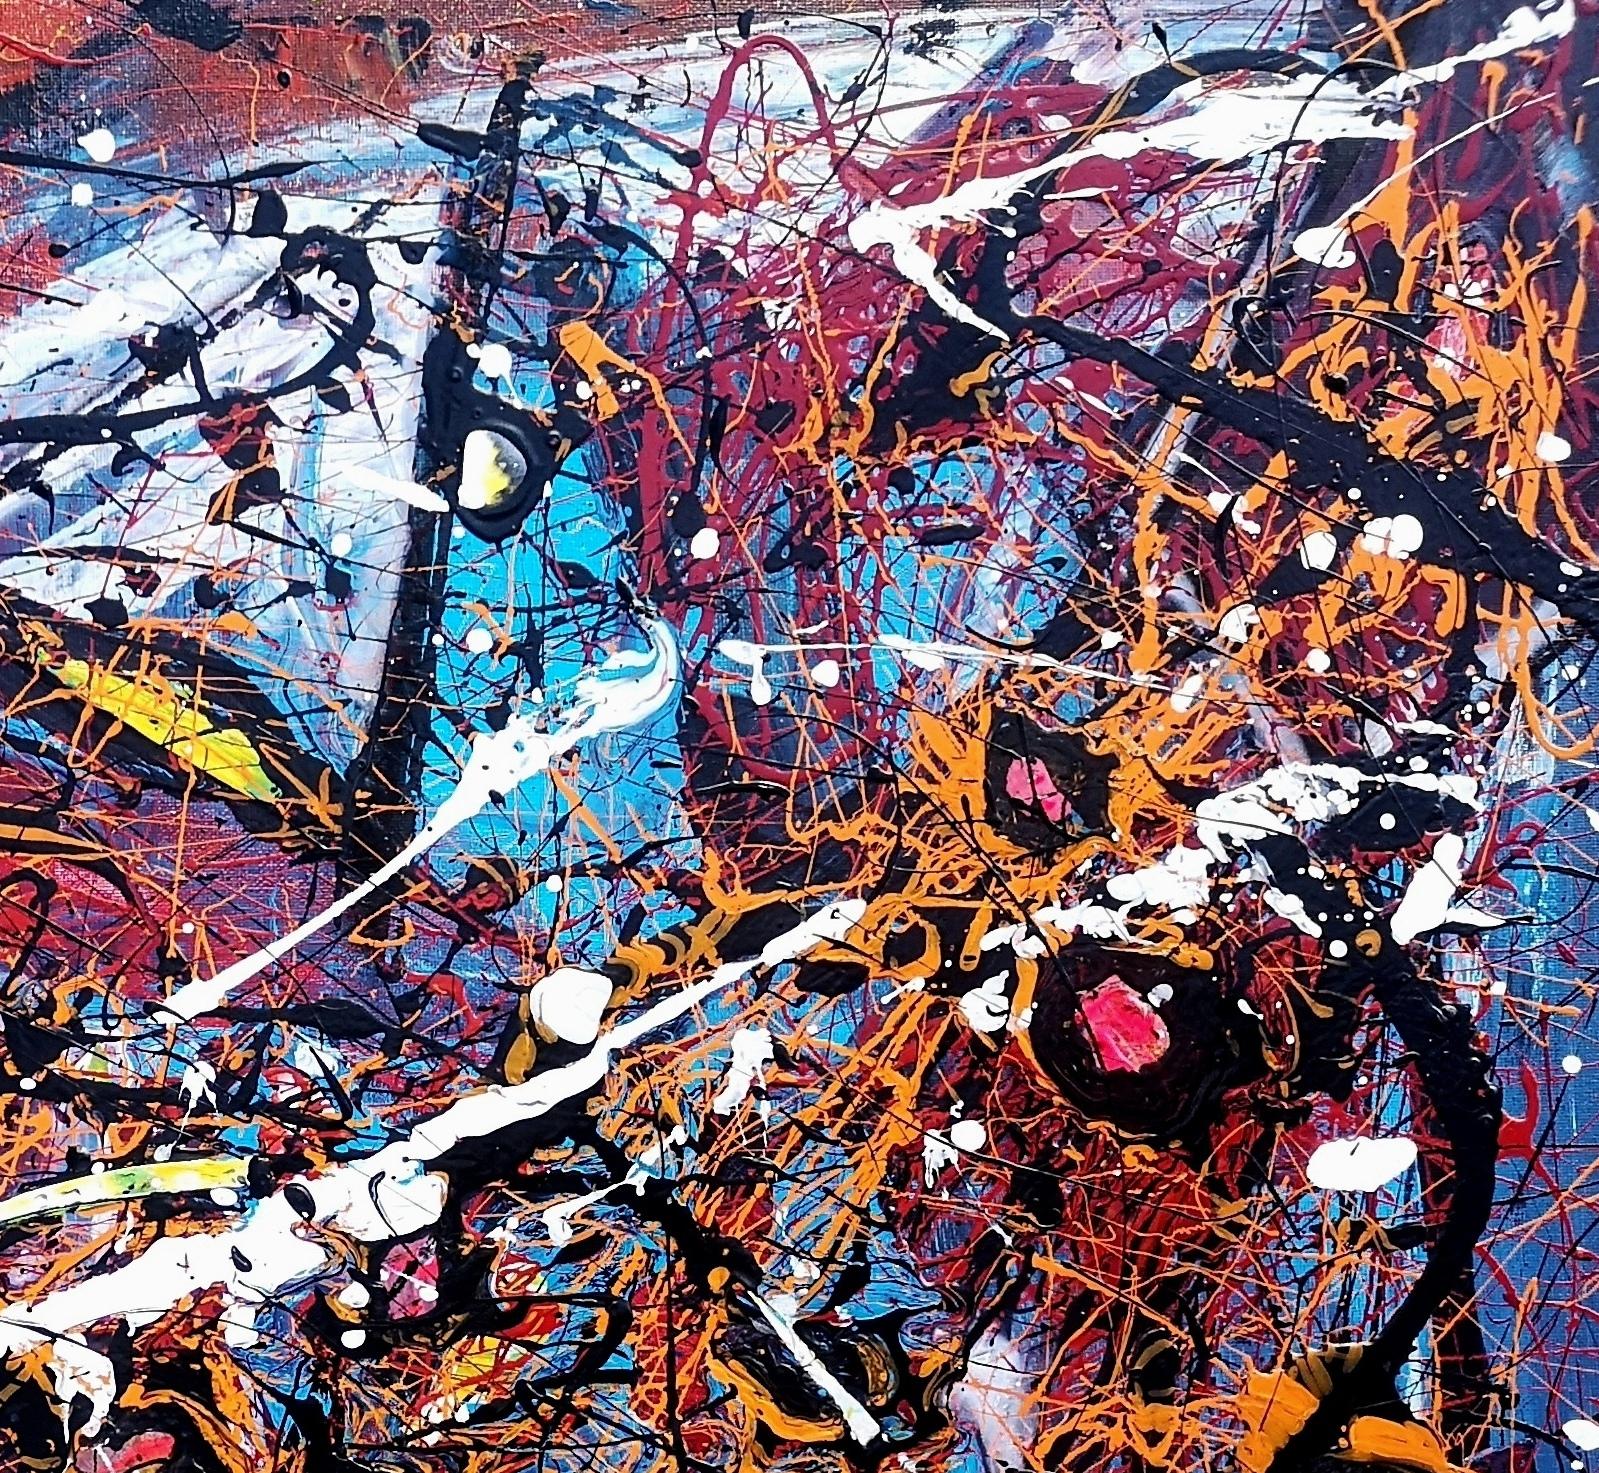 style Pollock « NOUVEAU DEPART » - Painting de Marie-Laure Romanet Prin company